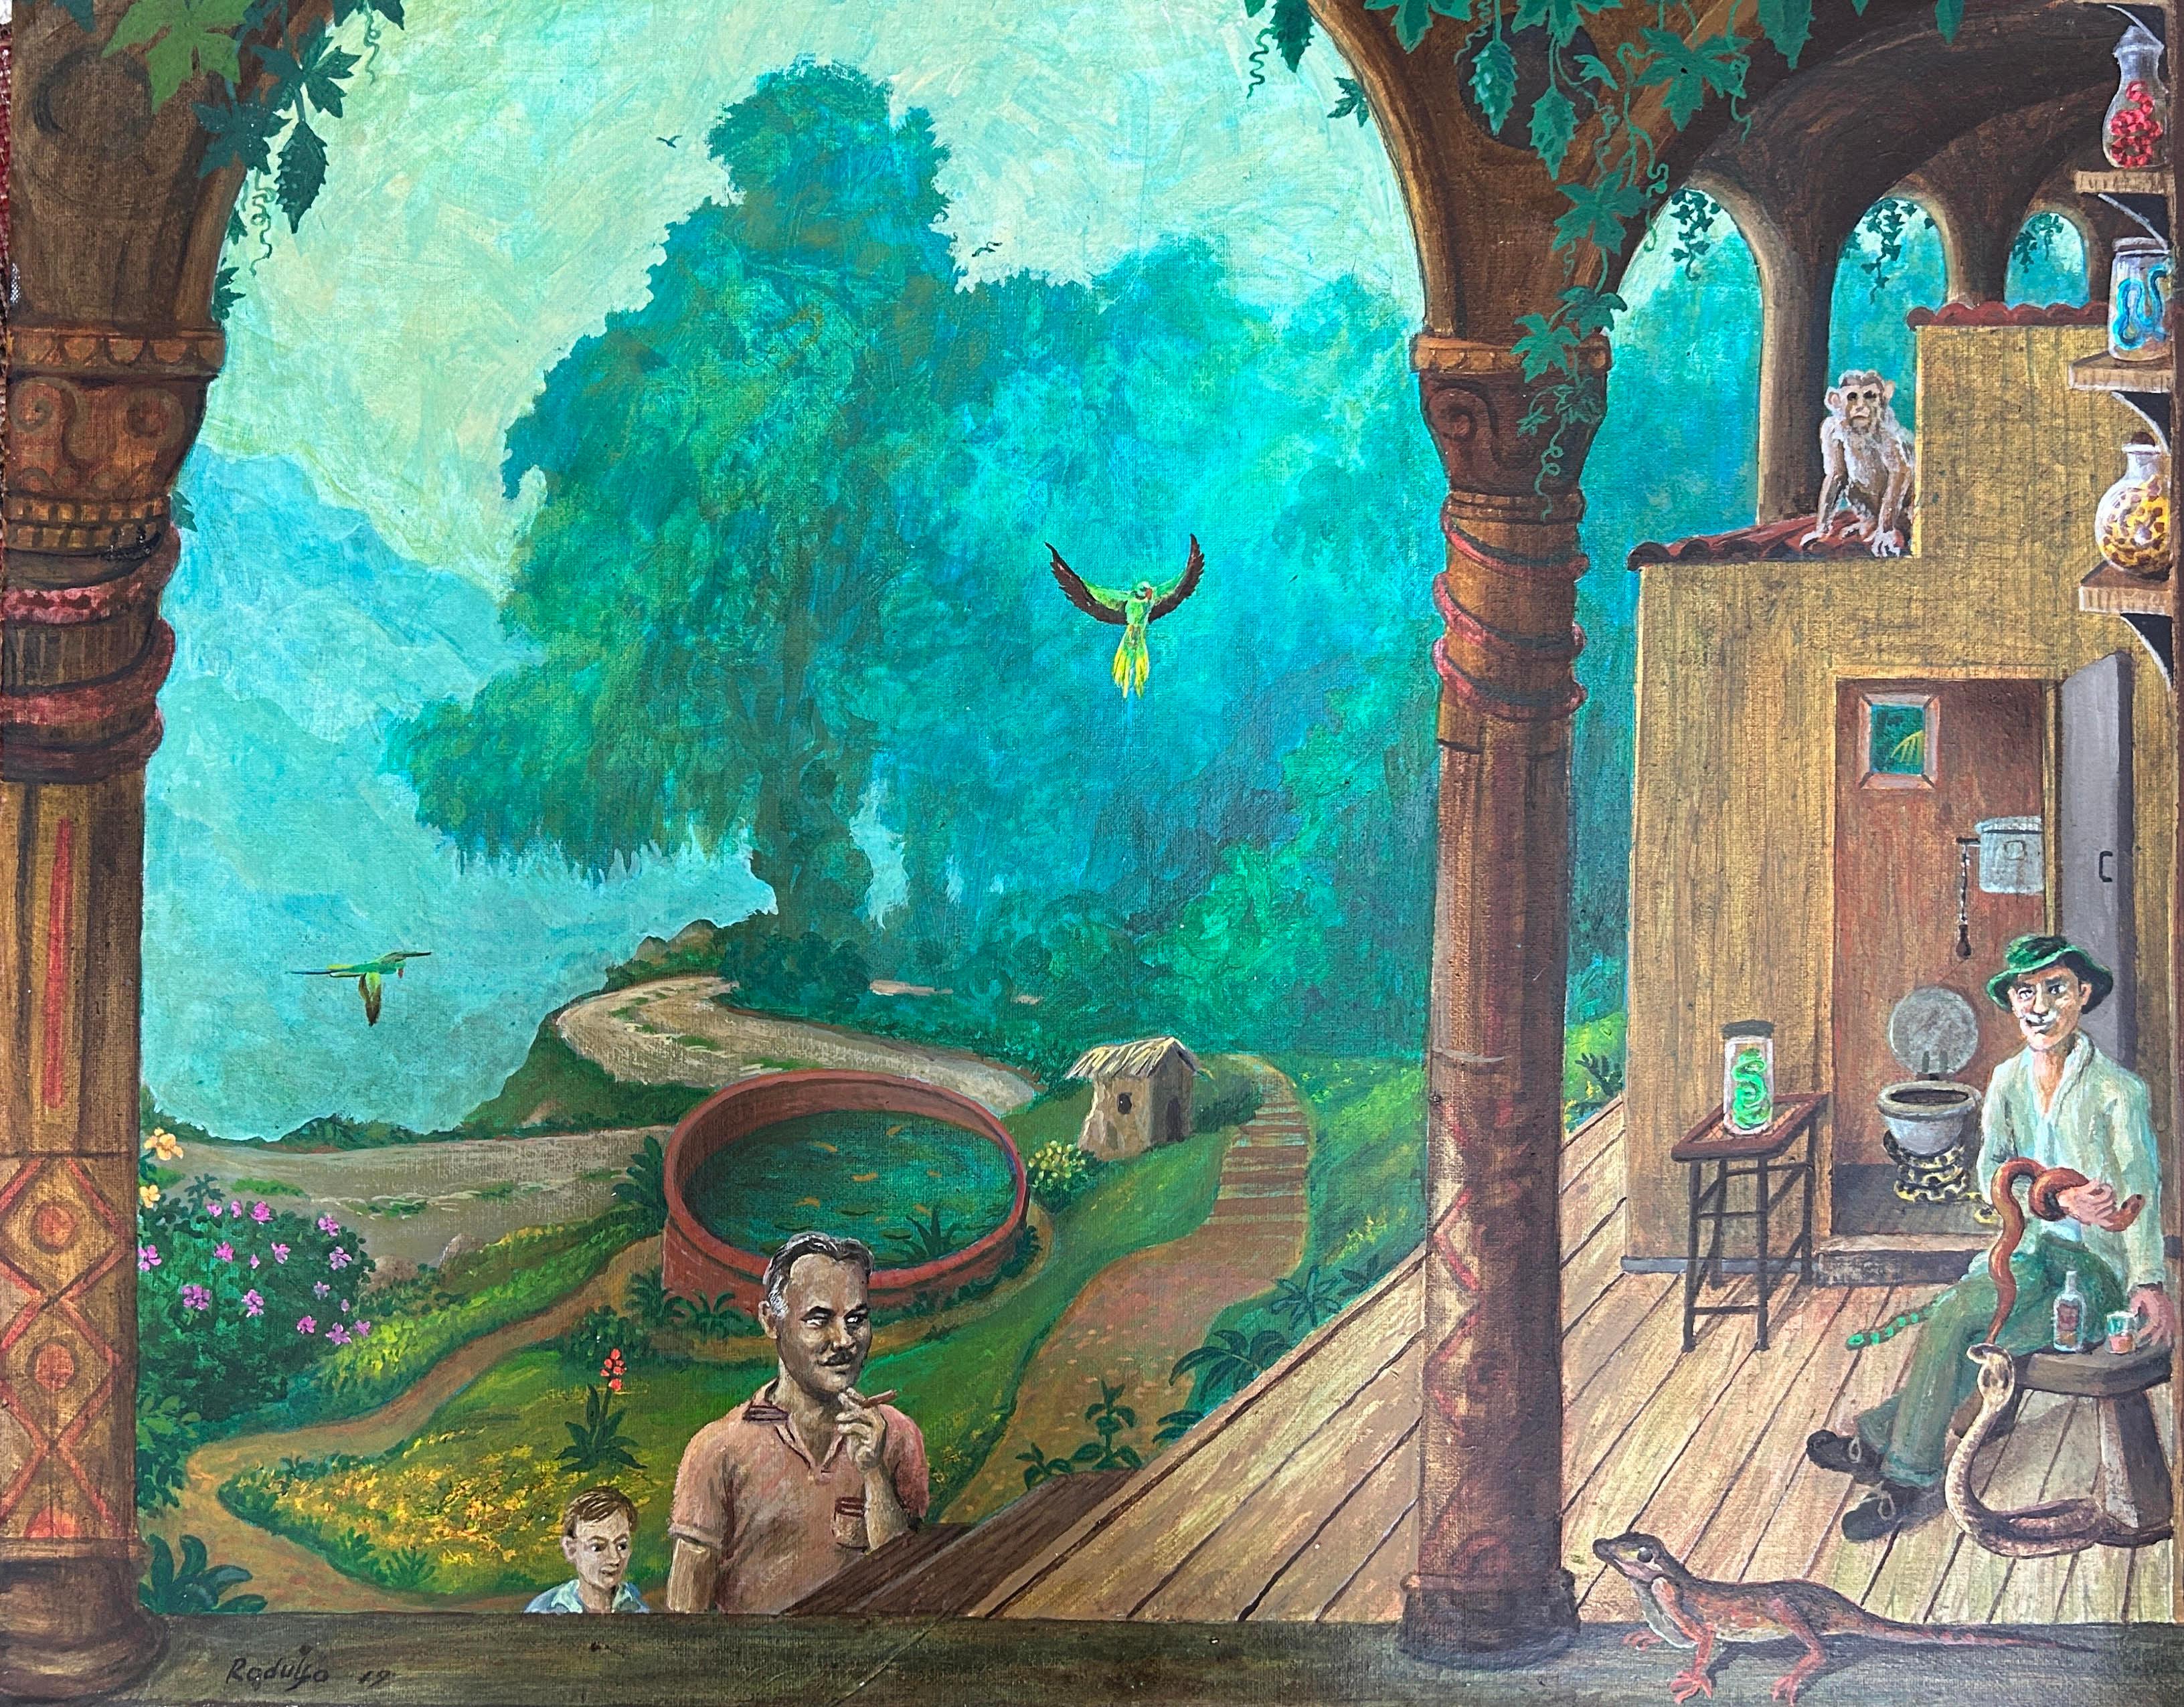 Peter Rodulfo Abstract Painting – Surrealistischer magischer Realismus Indien Dschungel Schlange Mann Türkis Blaue Papageien Affen